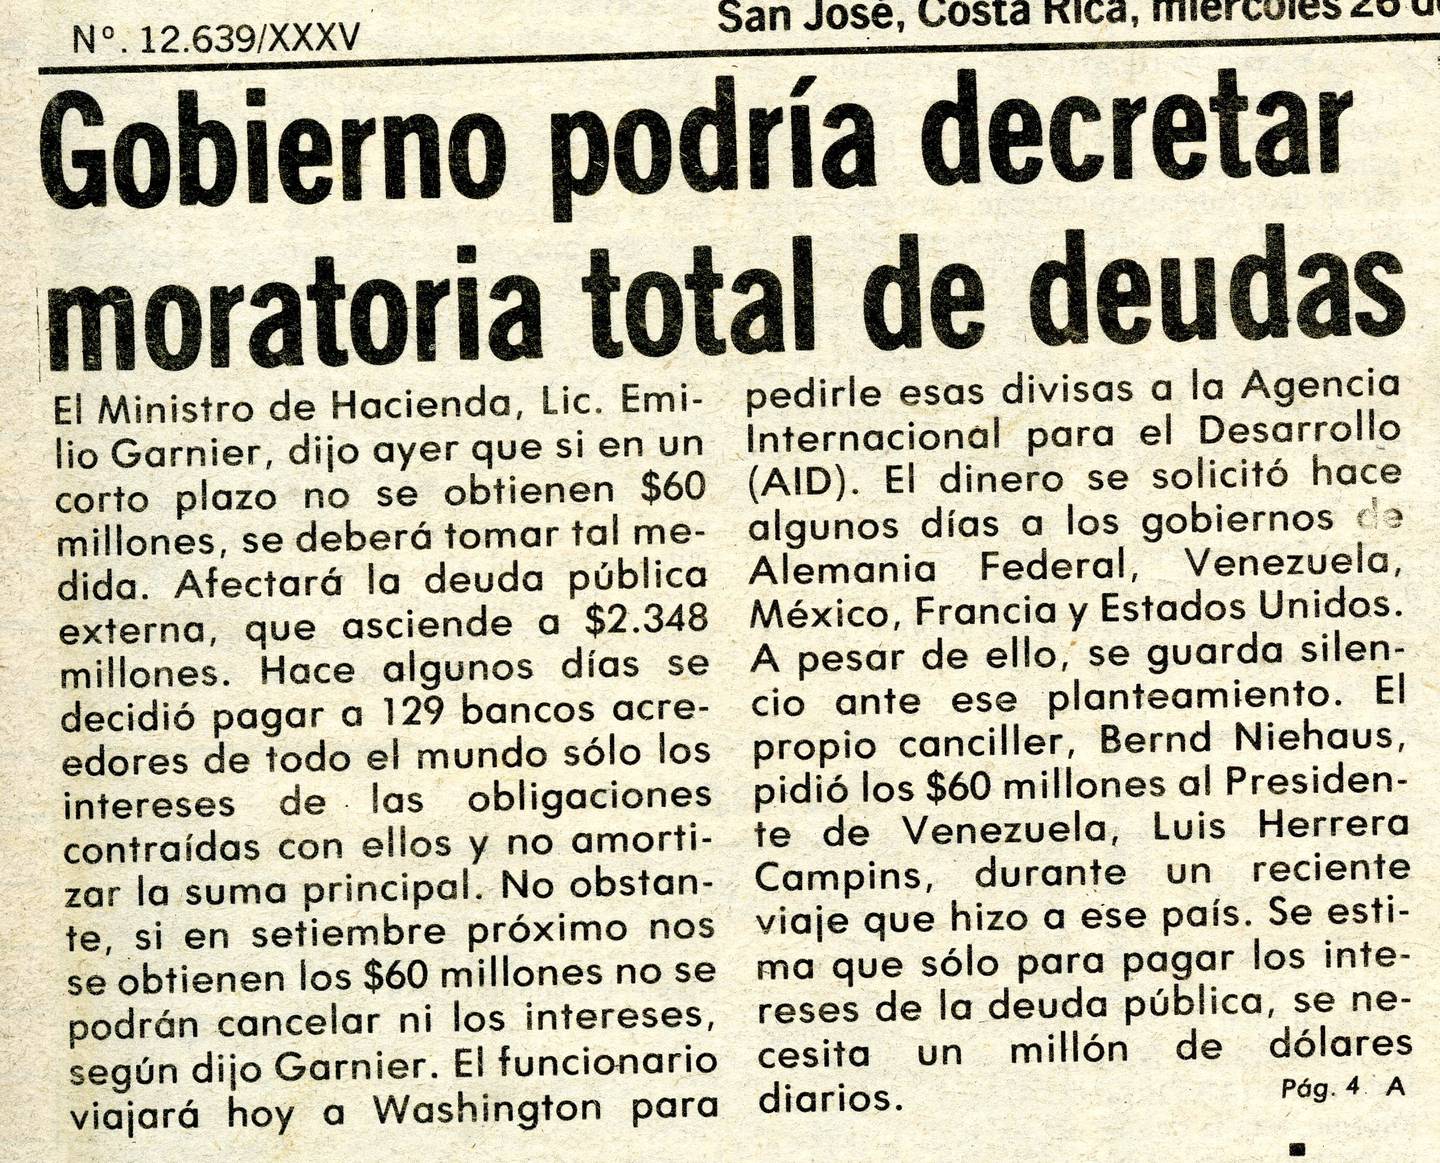 En agosto de 1981 el país dejó de pagar la deuda externa.